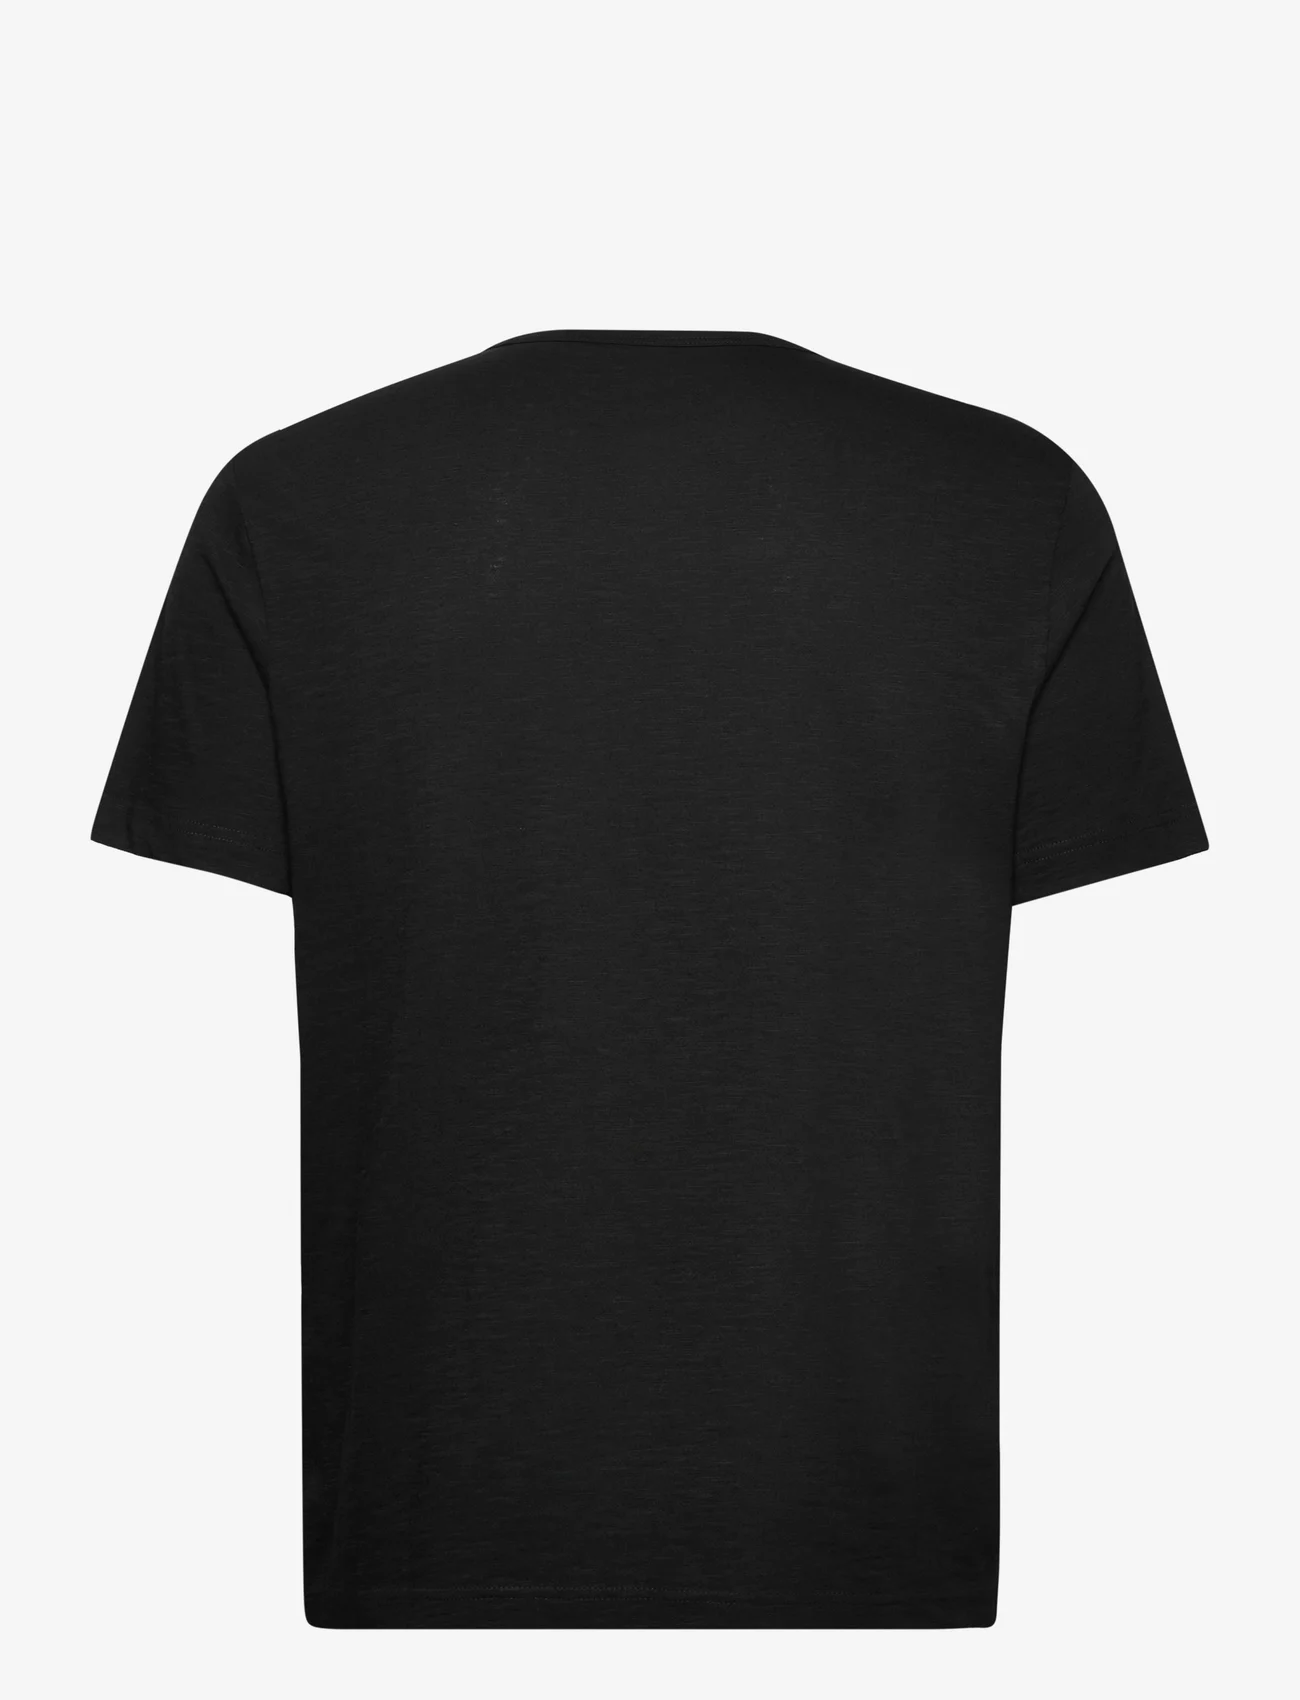 Tom Tailor - printed t-shirt - mažiausios kainos - black - 1